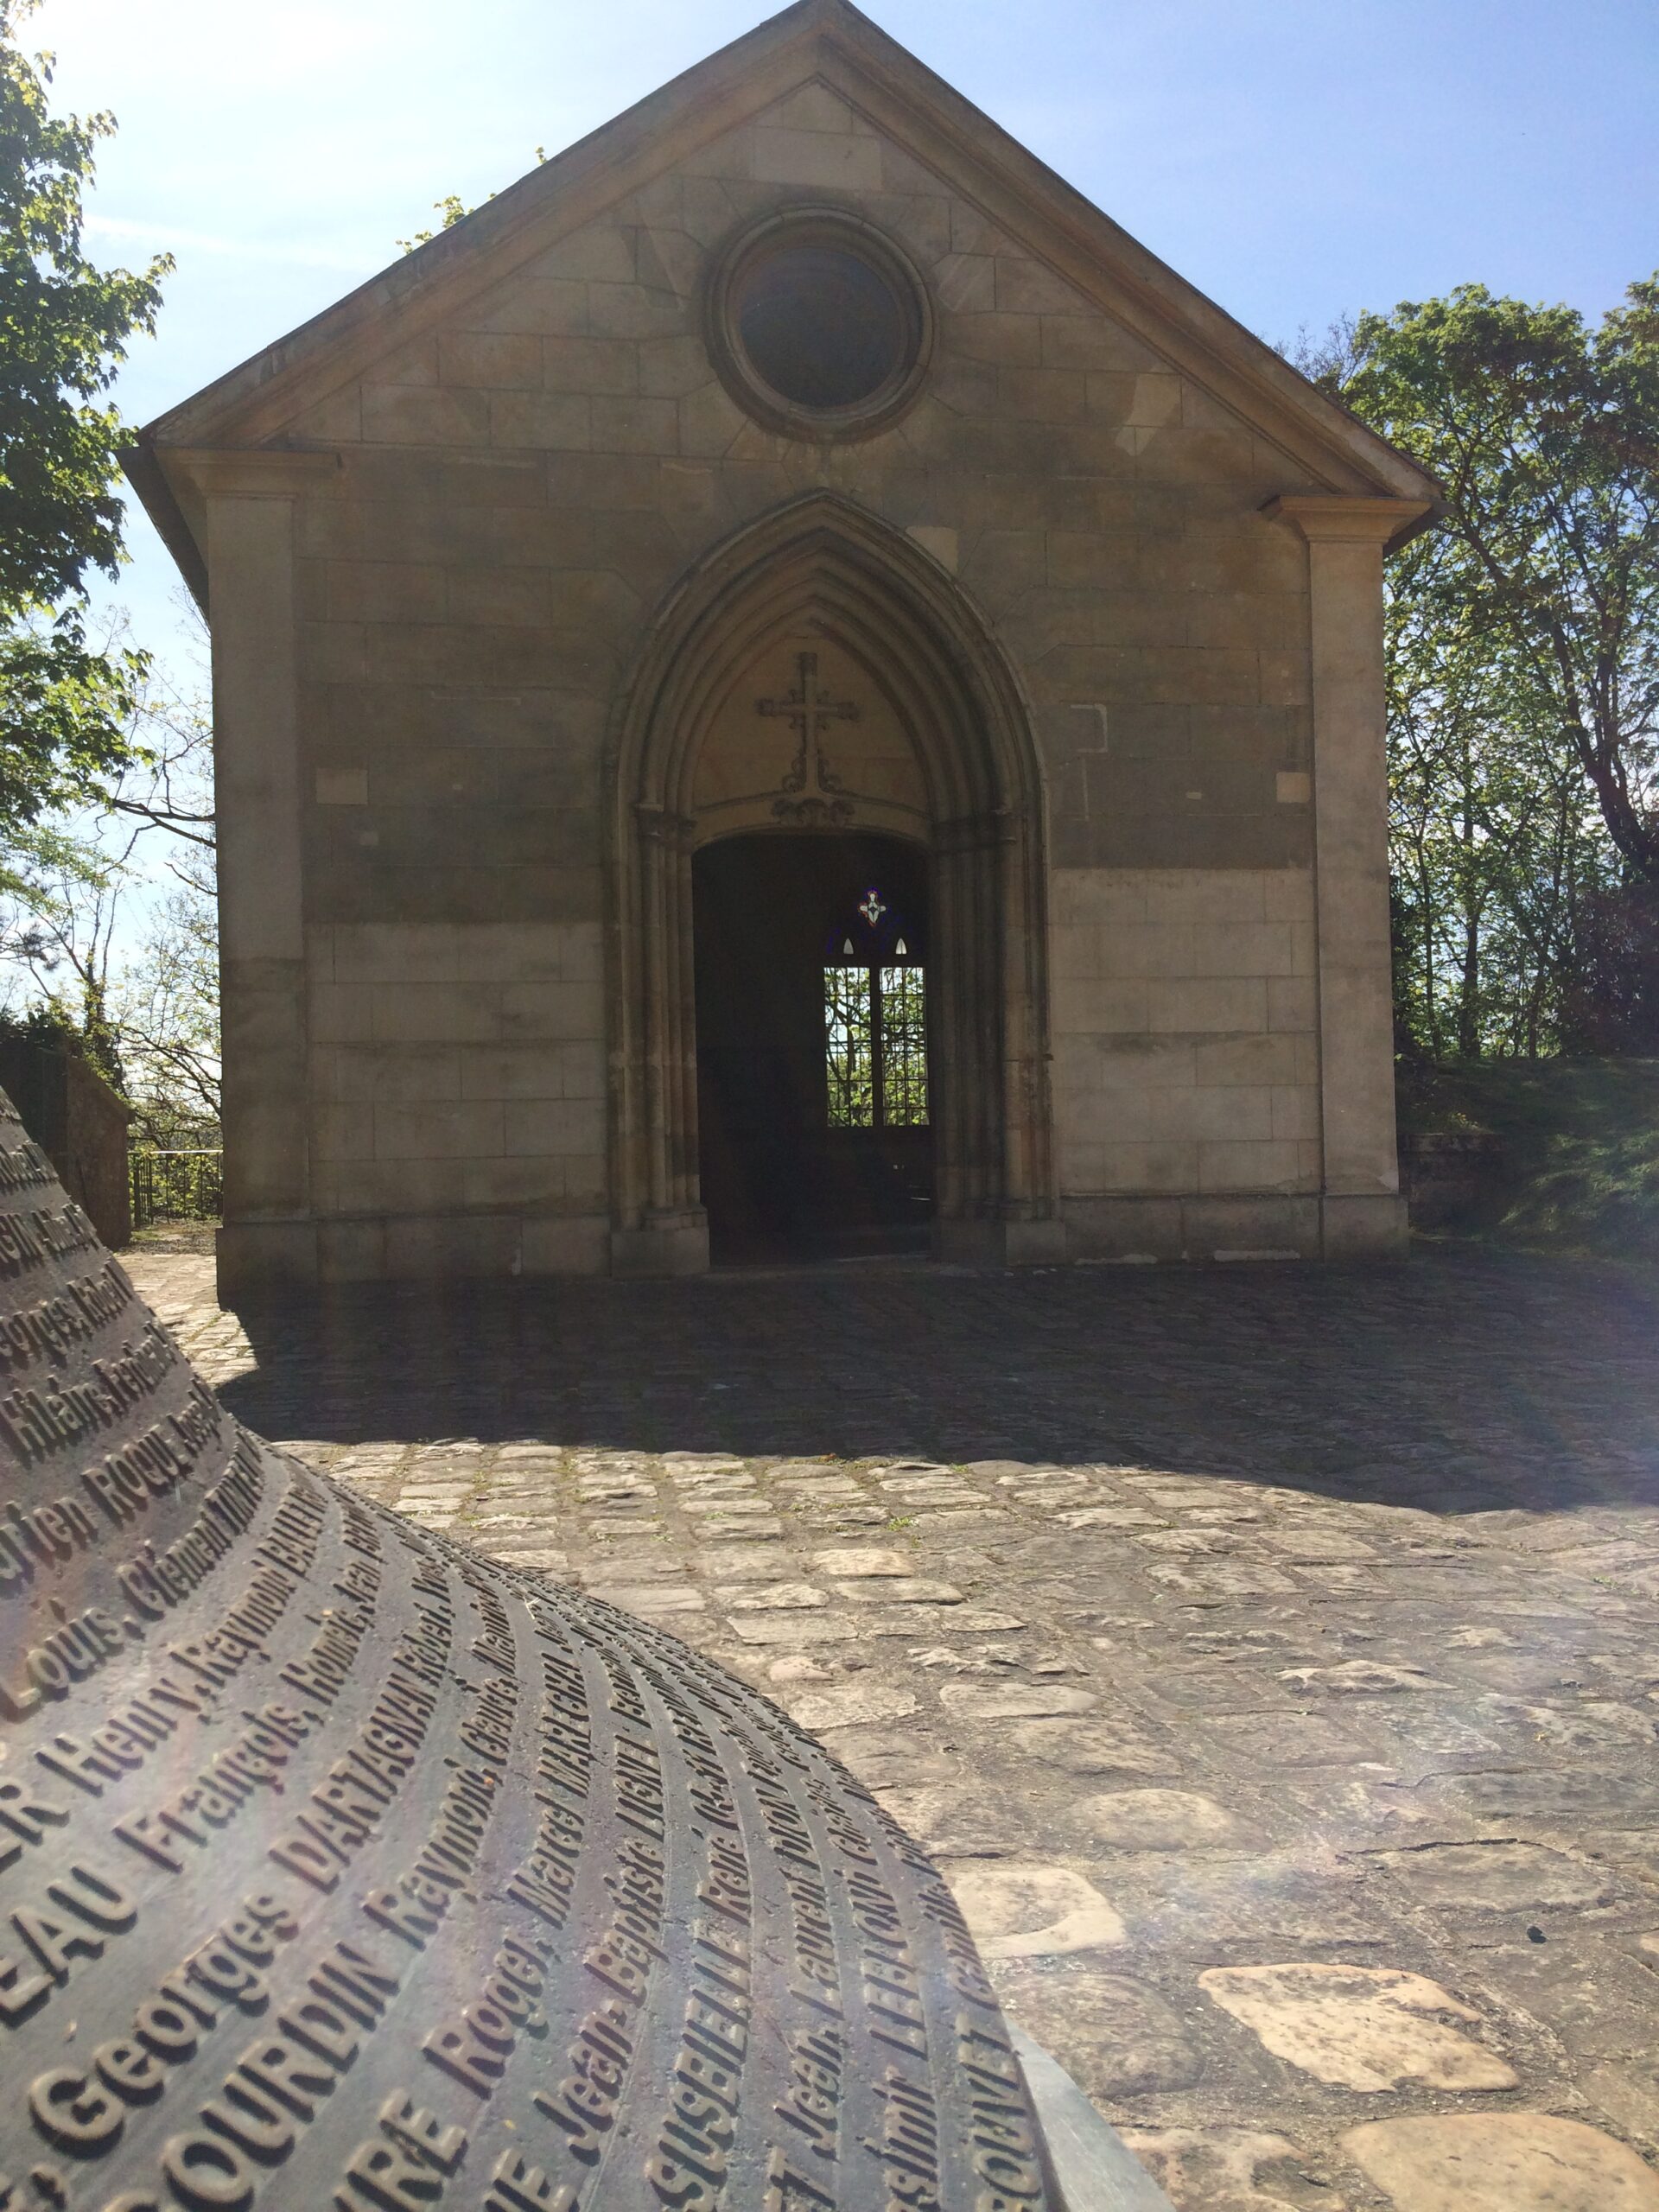 Chapelle Cloche Mont Valerien ®ACOUTURAS ONACVG scaled - Nanterre tourisme